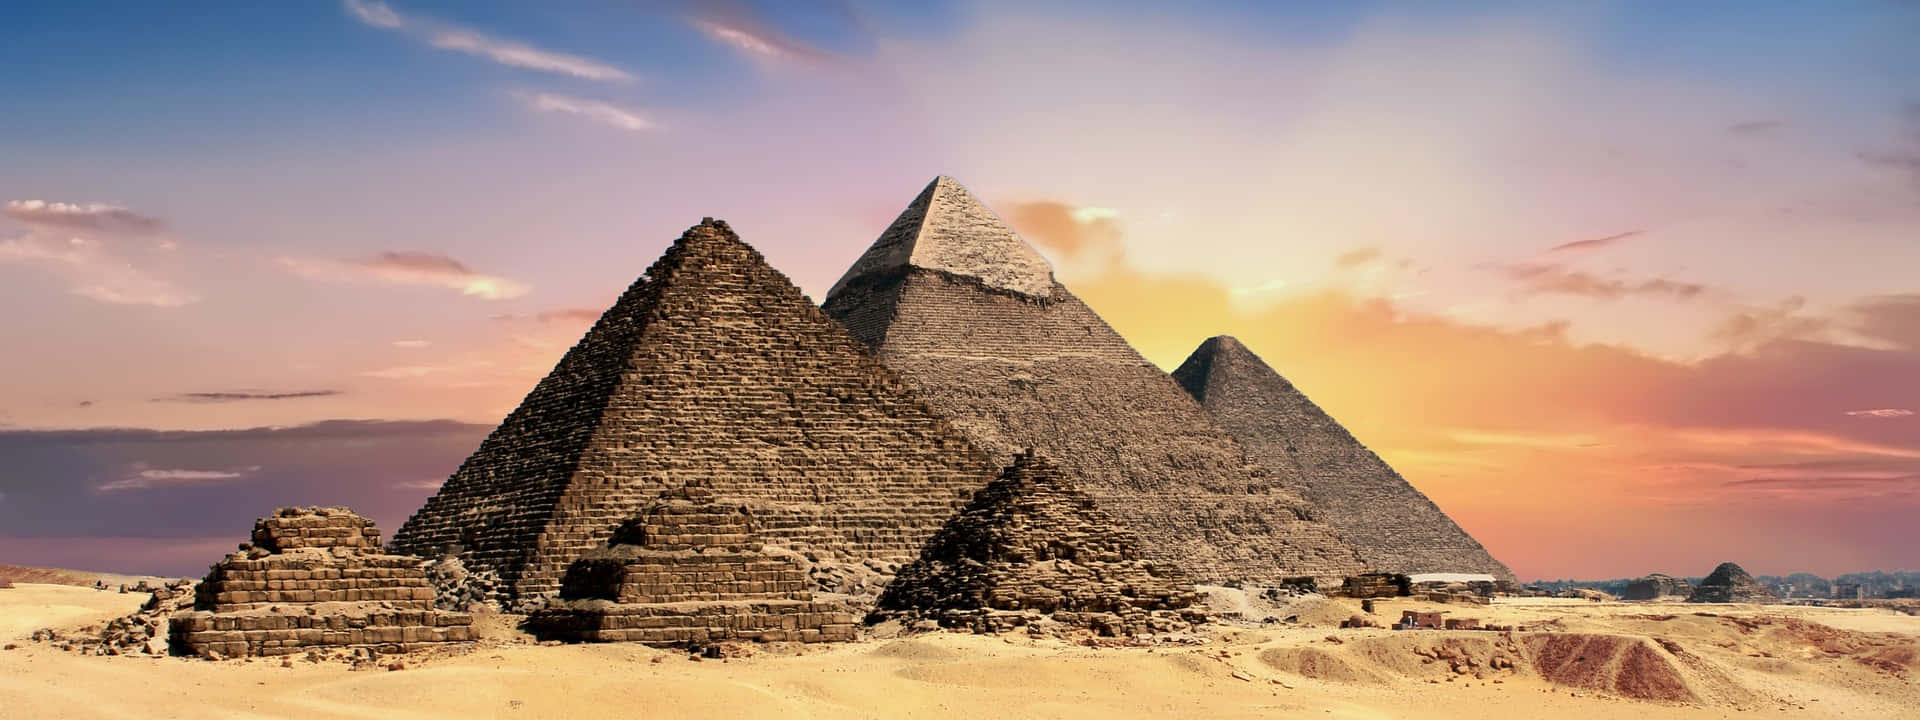 Imagenpanorámica De Una Vista Del Atardecer En La Pirámide